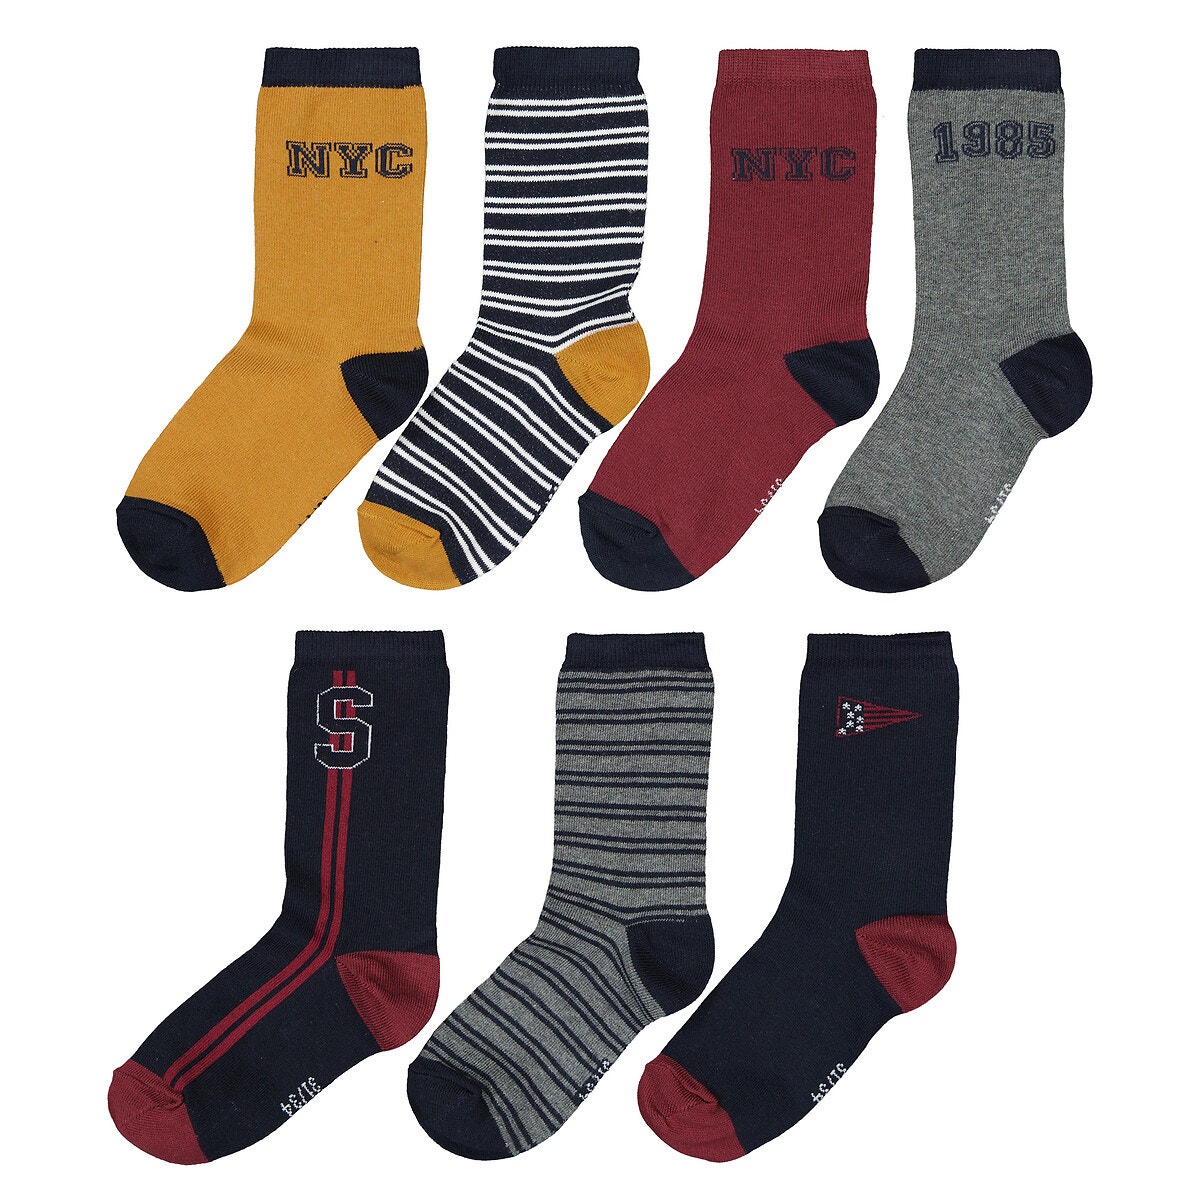 Μόδα > Παιδικά > Αγόρι > Κάλτσες Σετ 7 ζευγάρια κάλτσες με μοτίβο New York